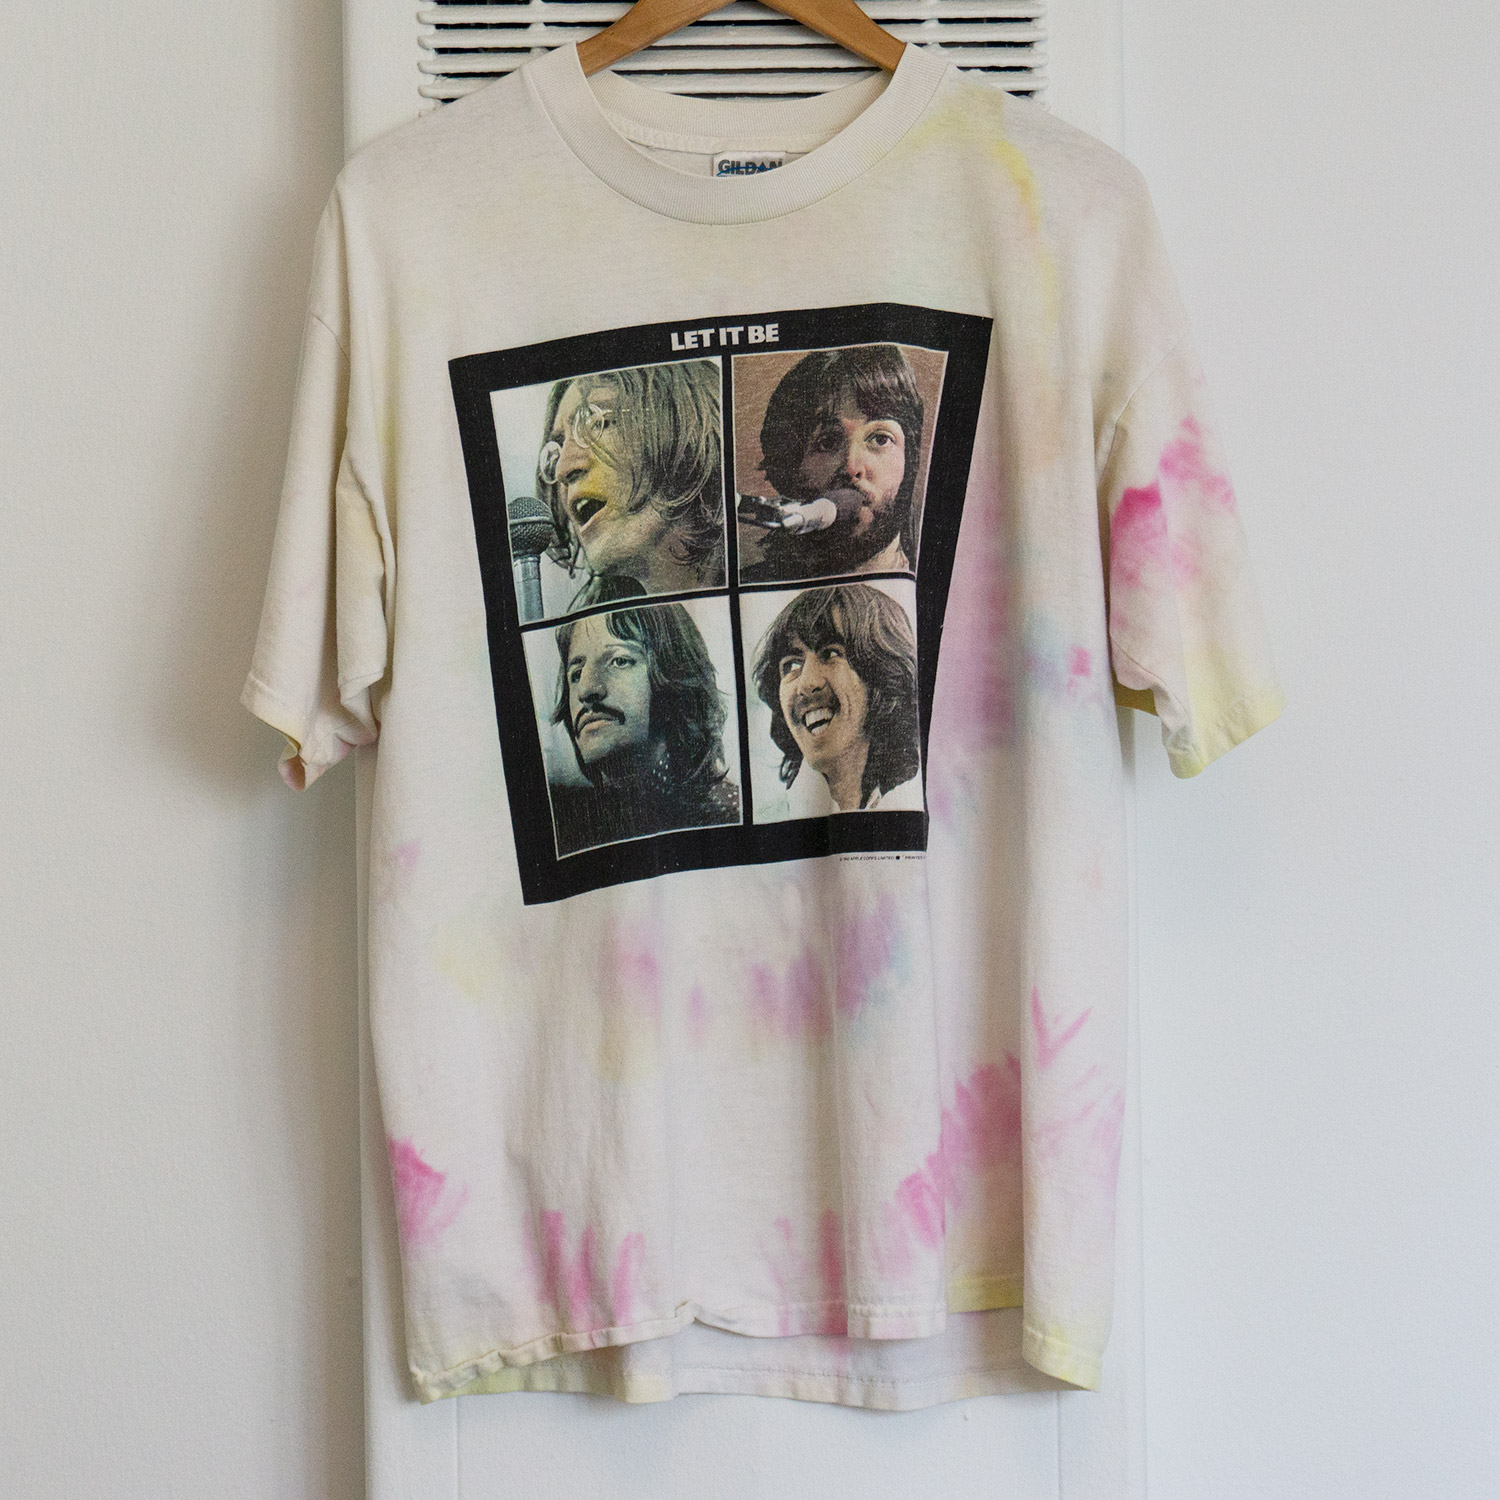 Vintage Tie-Dye Beatles Let It Be T-shirt, Front